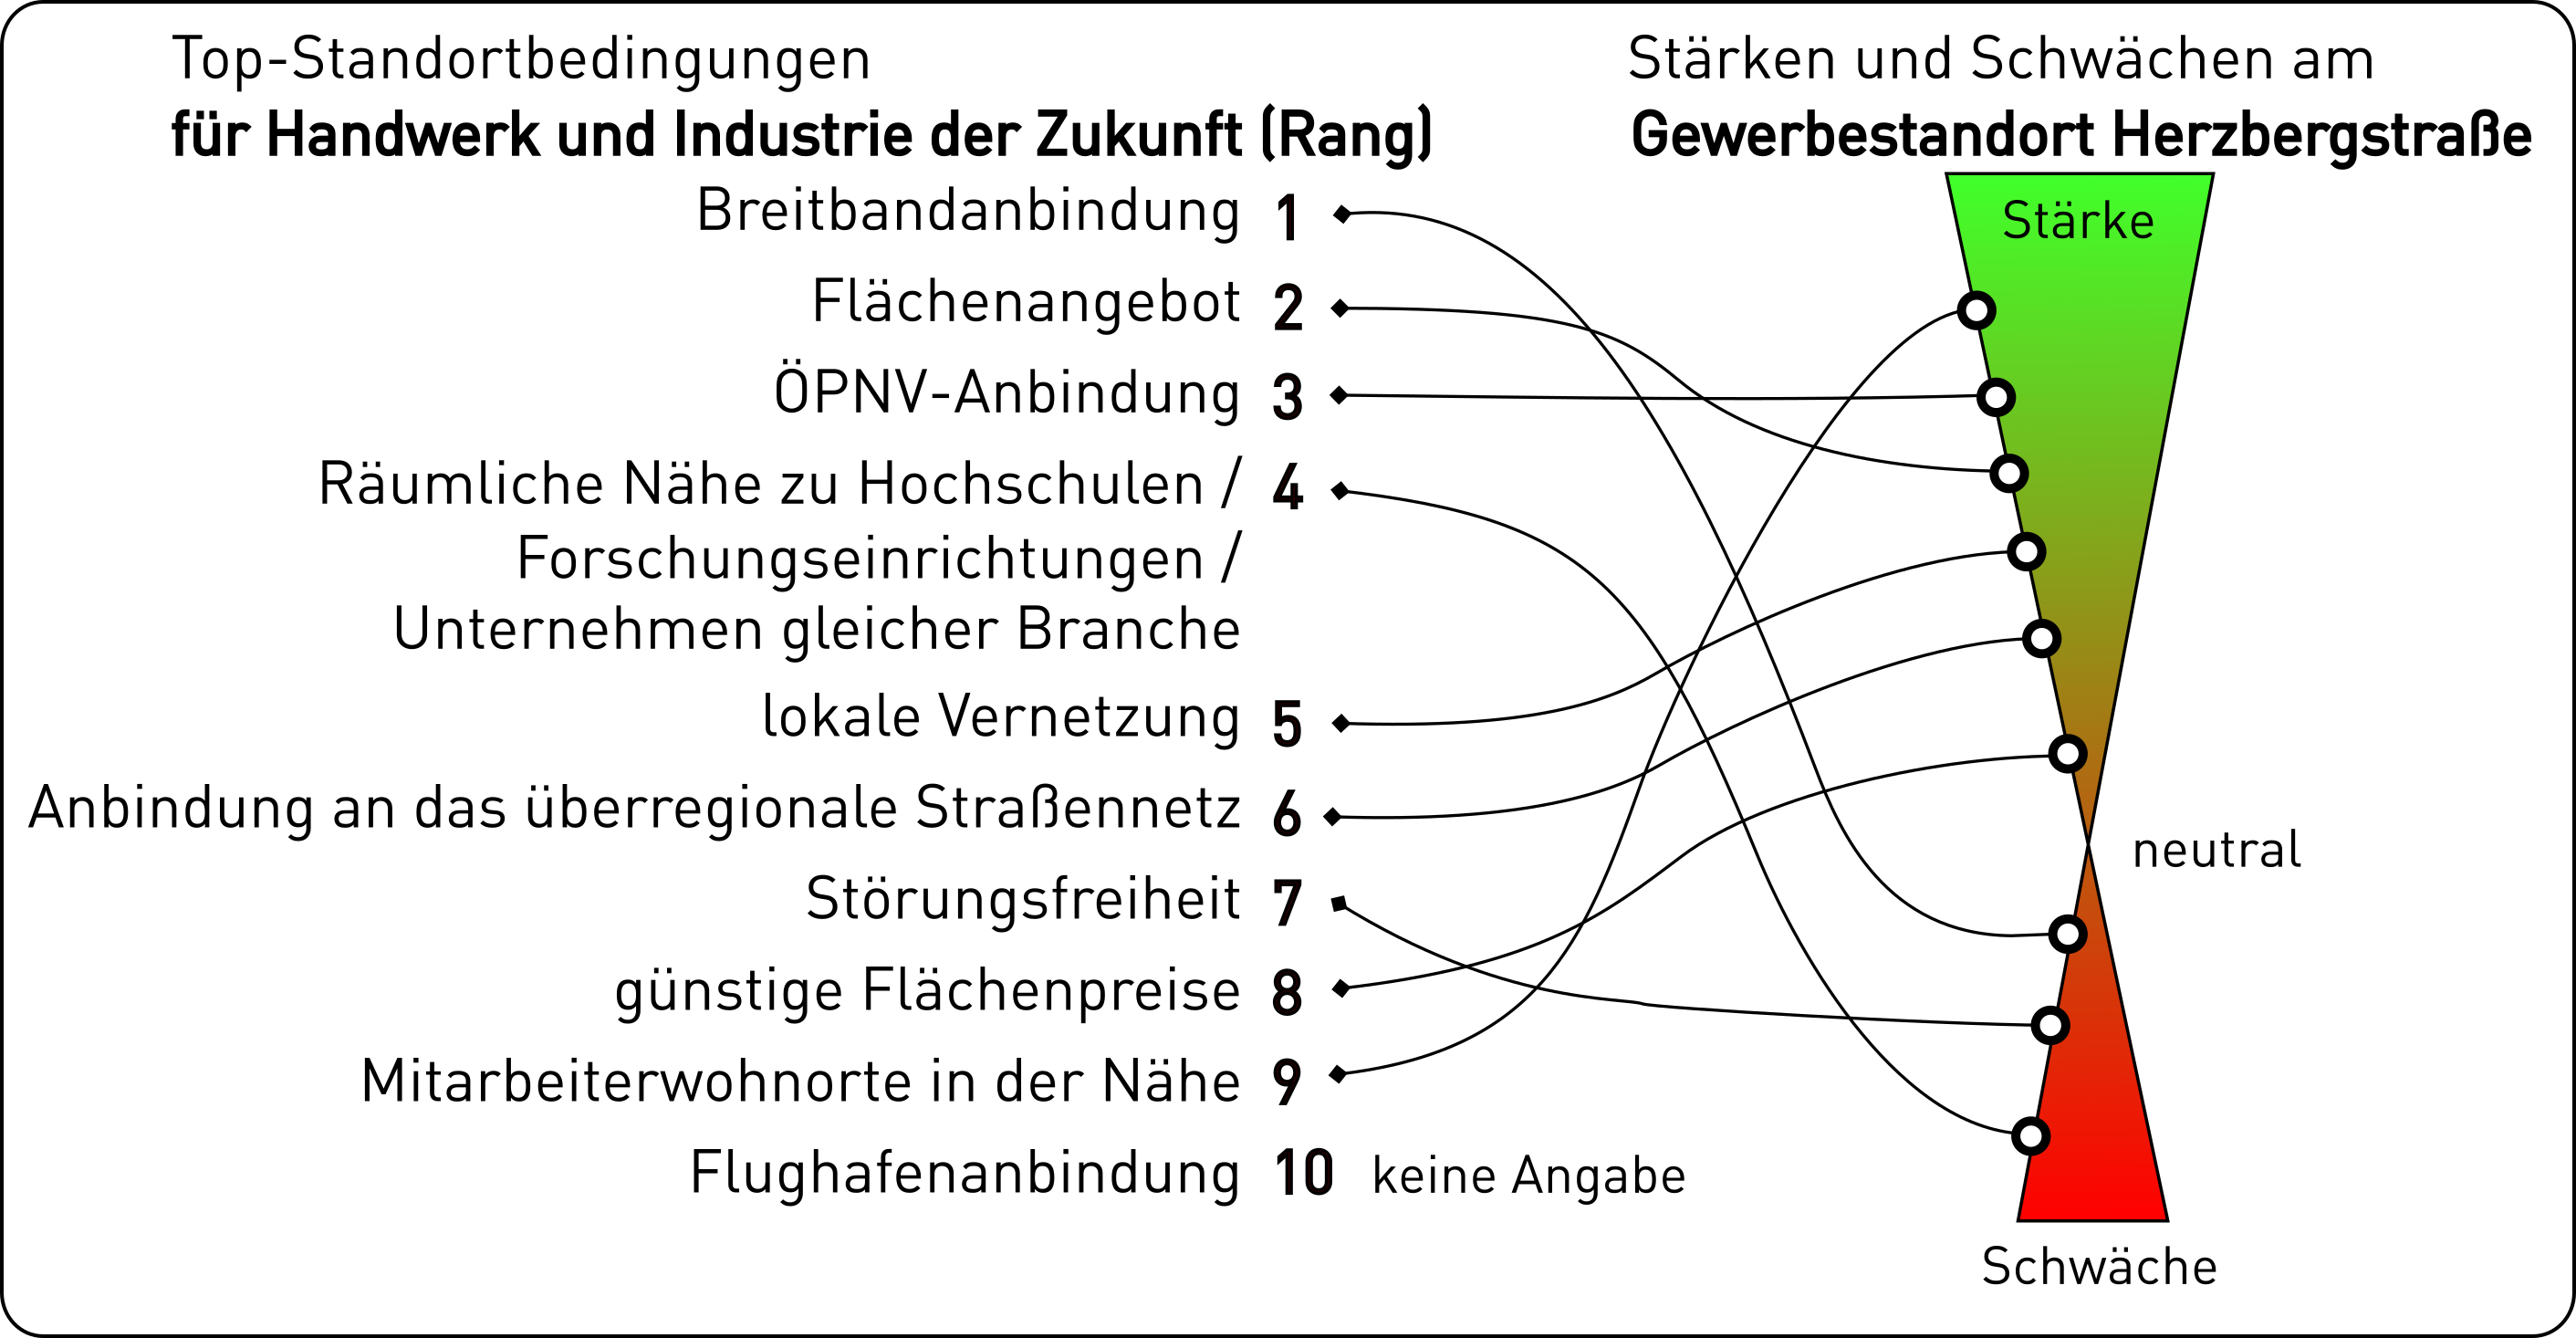 Standortbedingungen sowie die Stärken und Schwächen am Standort Herzbergstraße im Vergleich. Graphik: regioconsult/SA